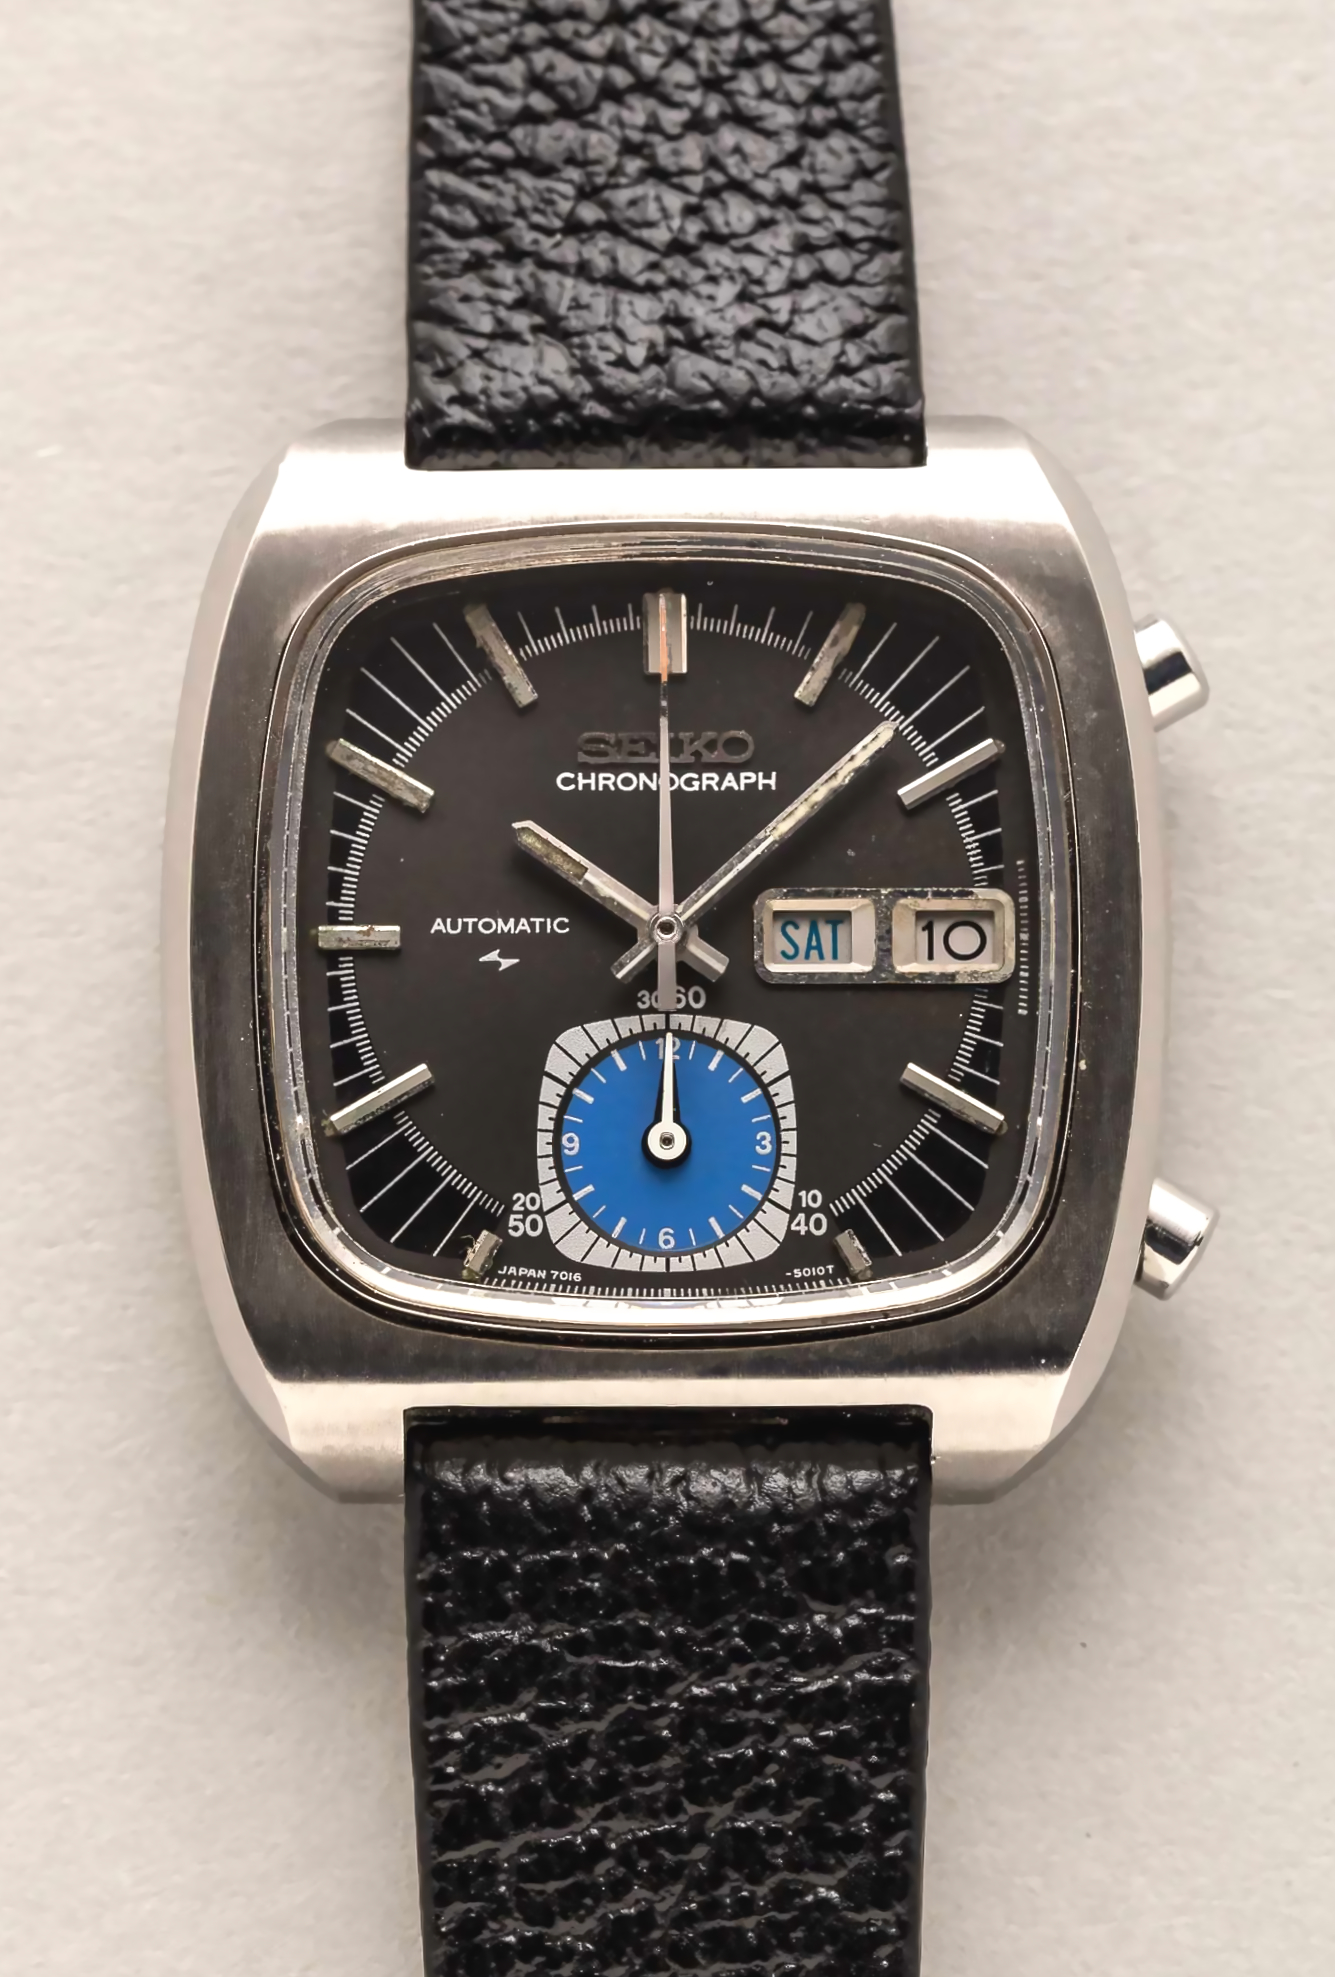 Seiko Monaco Vintage Chronograph 7016-5011 - Shuck the Oyster Vintage ...